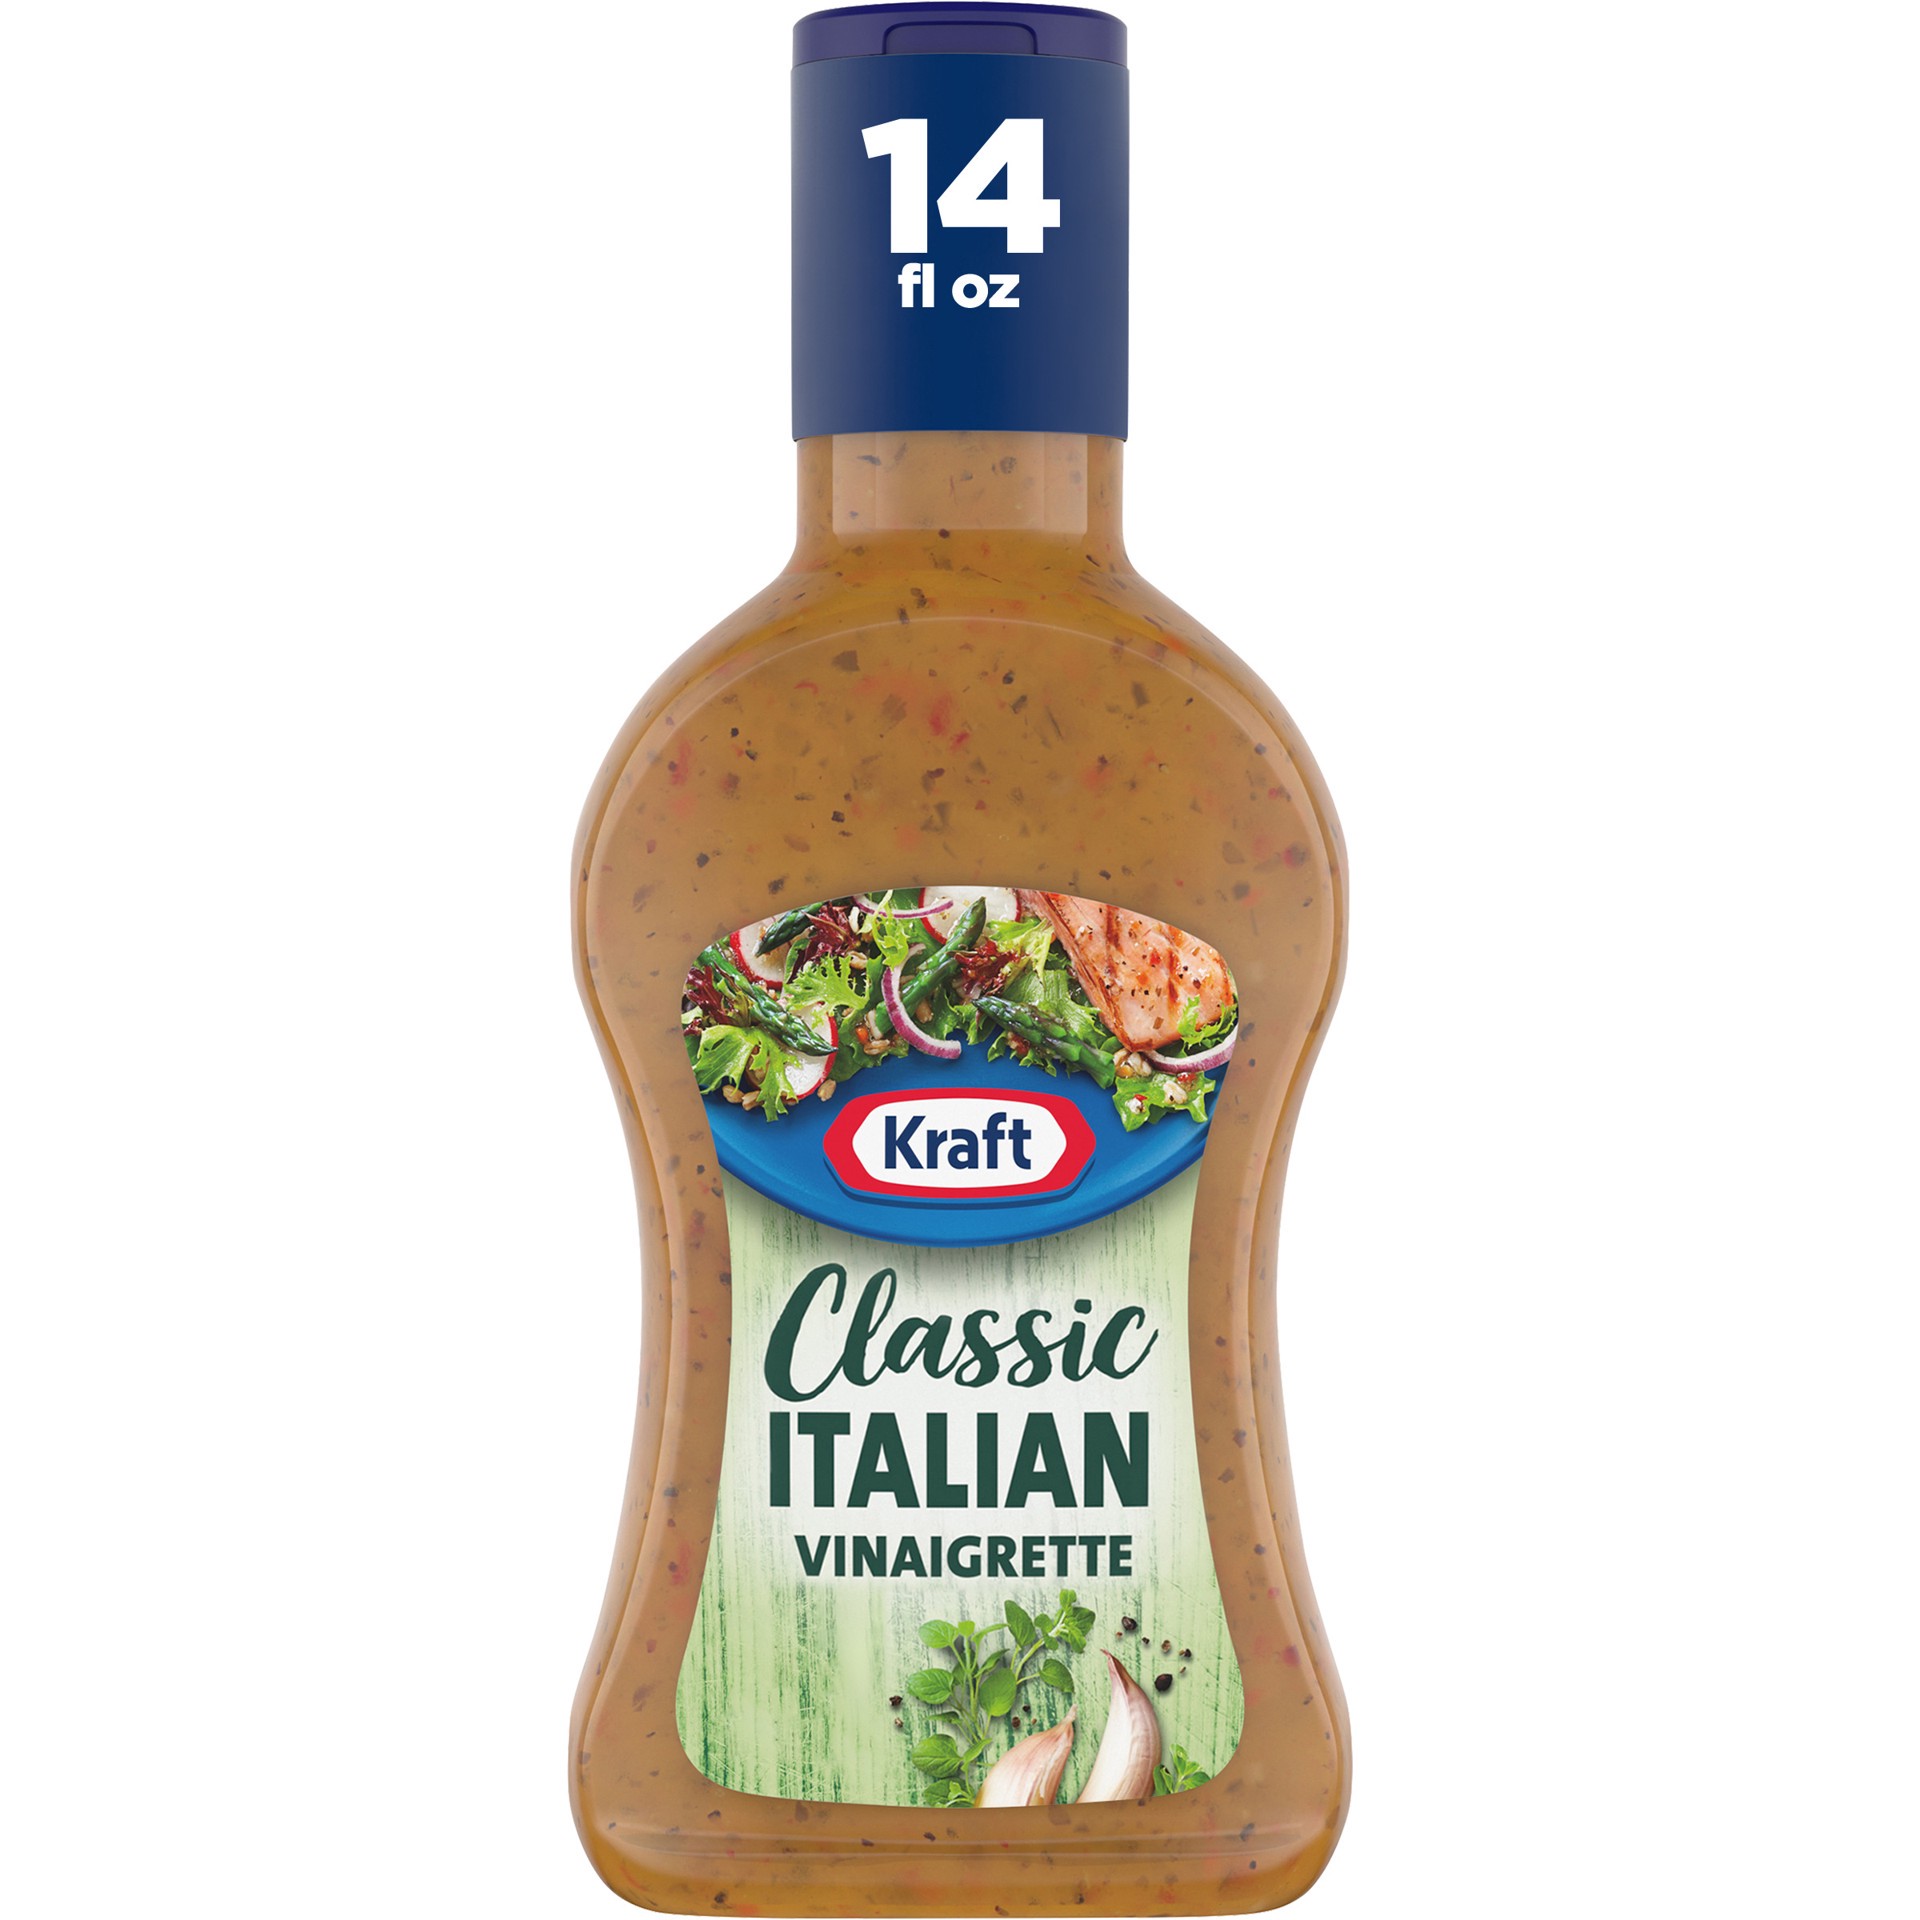 slide 1 of 7, Kraft Classic Italian Vinaigrette Salad Dressing Bottle, 14 fl oz